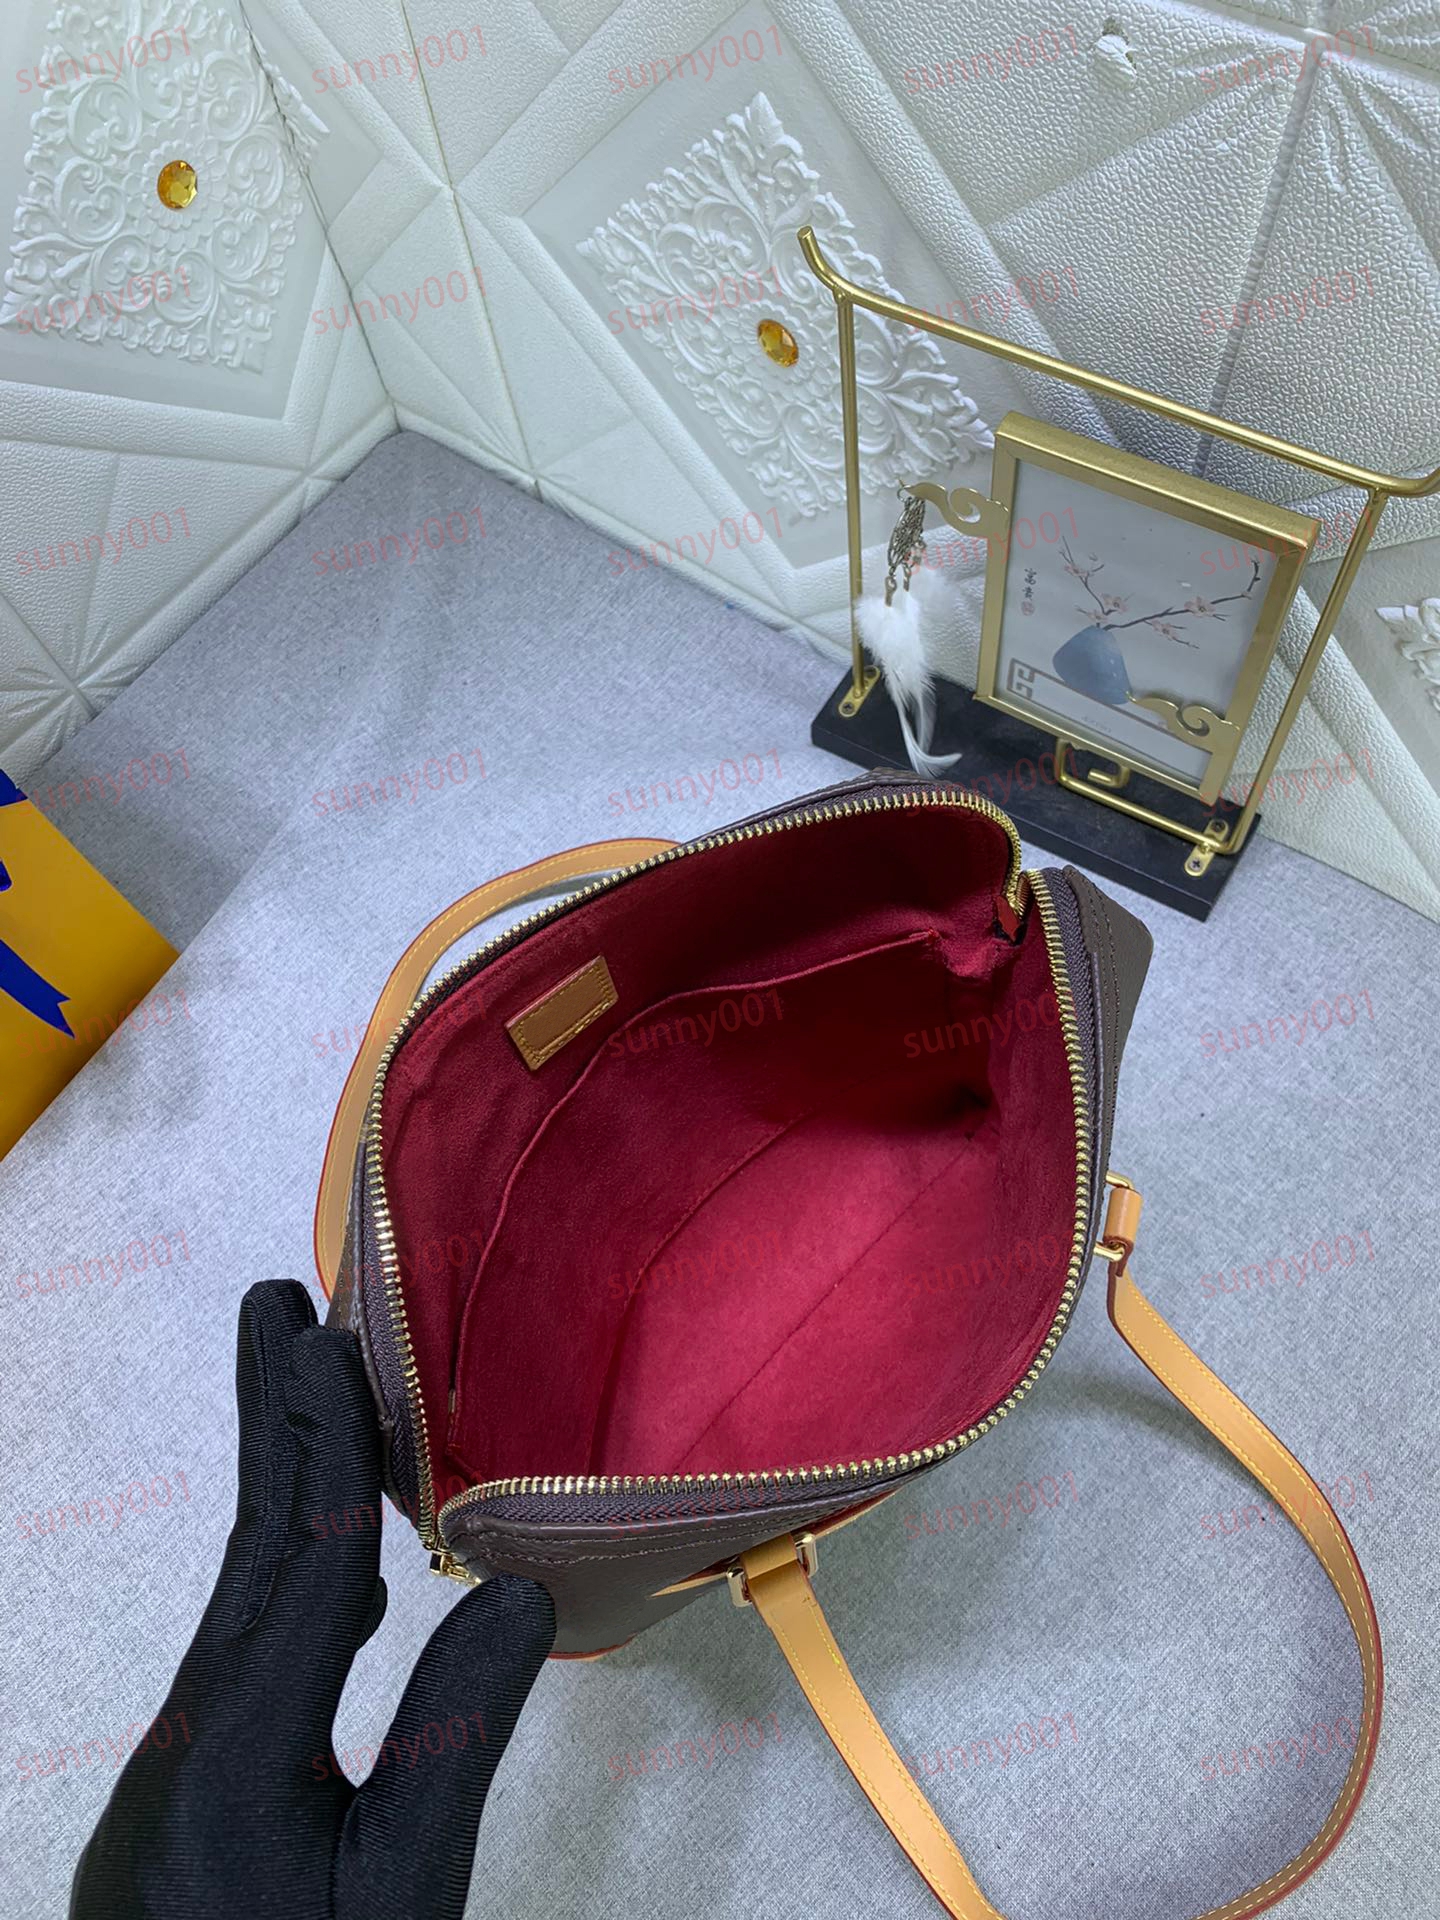 中世のスロー枕バッグ古い花のデザインクロスボディバッグビンテージ用途ロング2つのストラップバッグラグジュアリーダブルジッパー財布